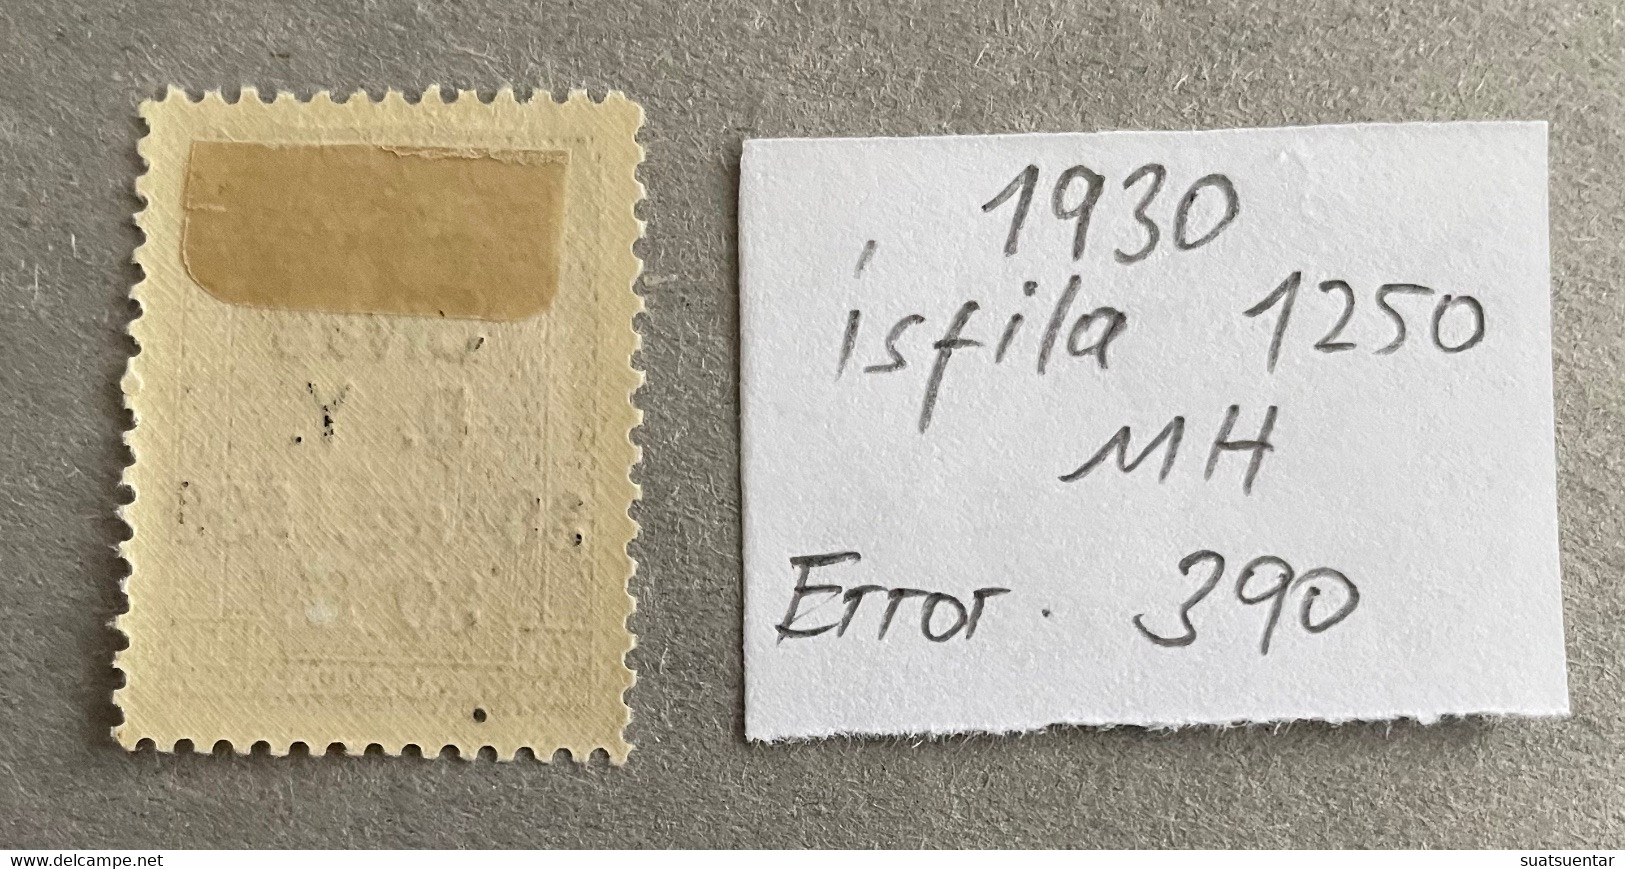 1930 Sivas-Ankara Railway Stamps Error   390 MH Isfila 1250 - Nuevos